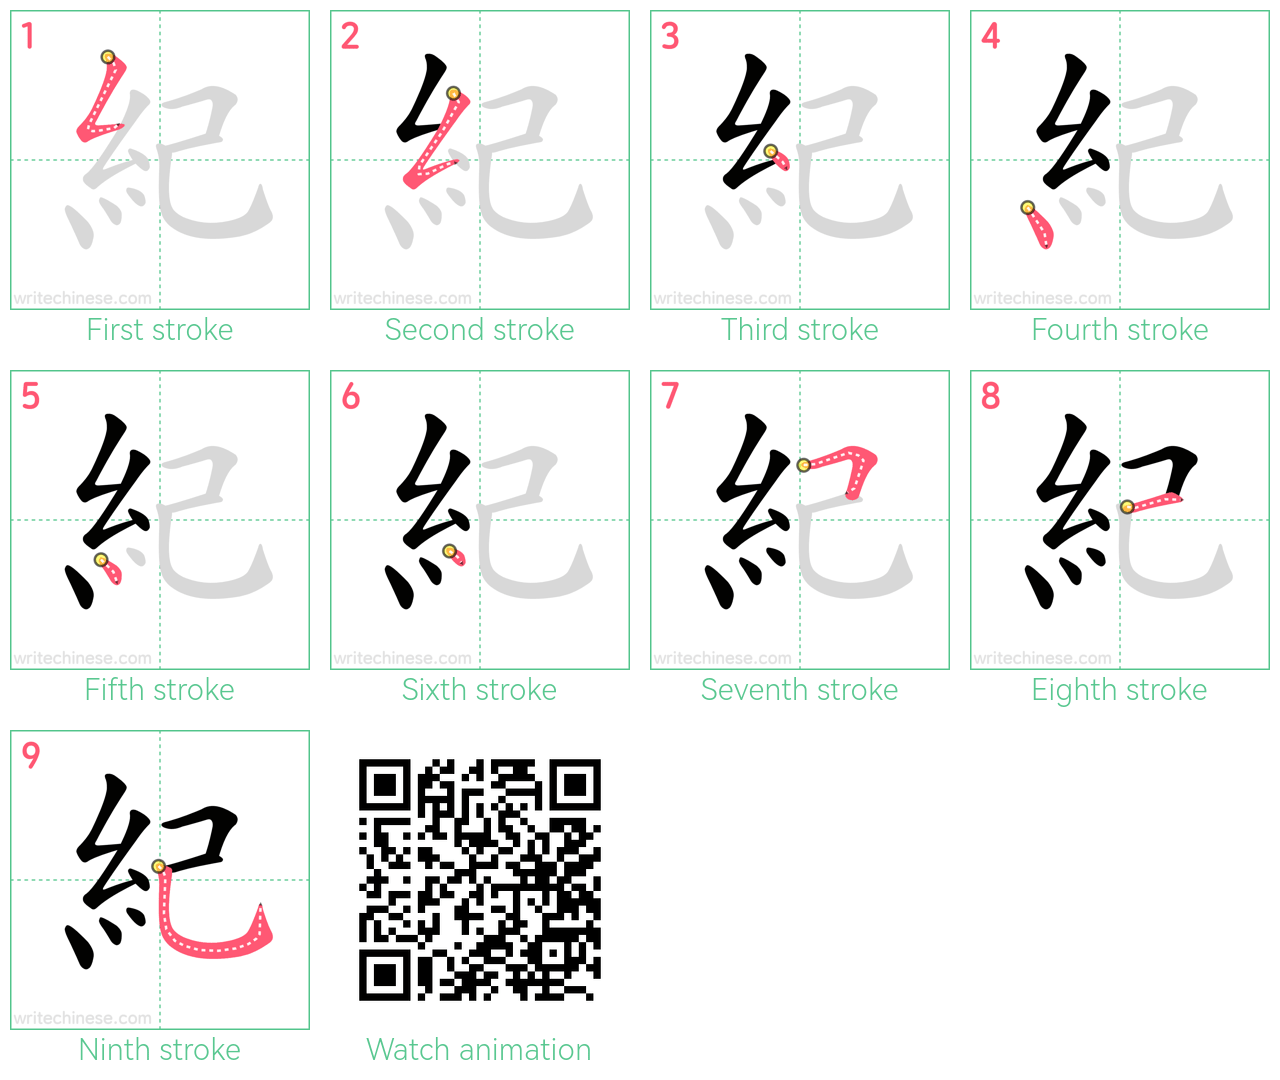 紀 step-by-step stroke order diagrams